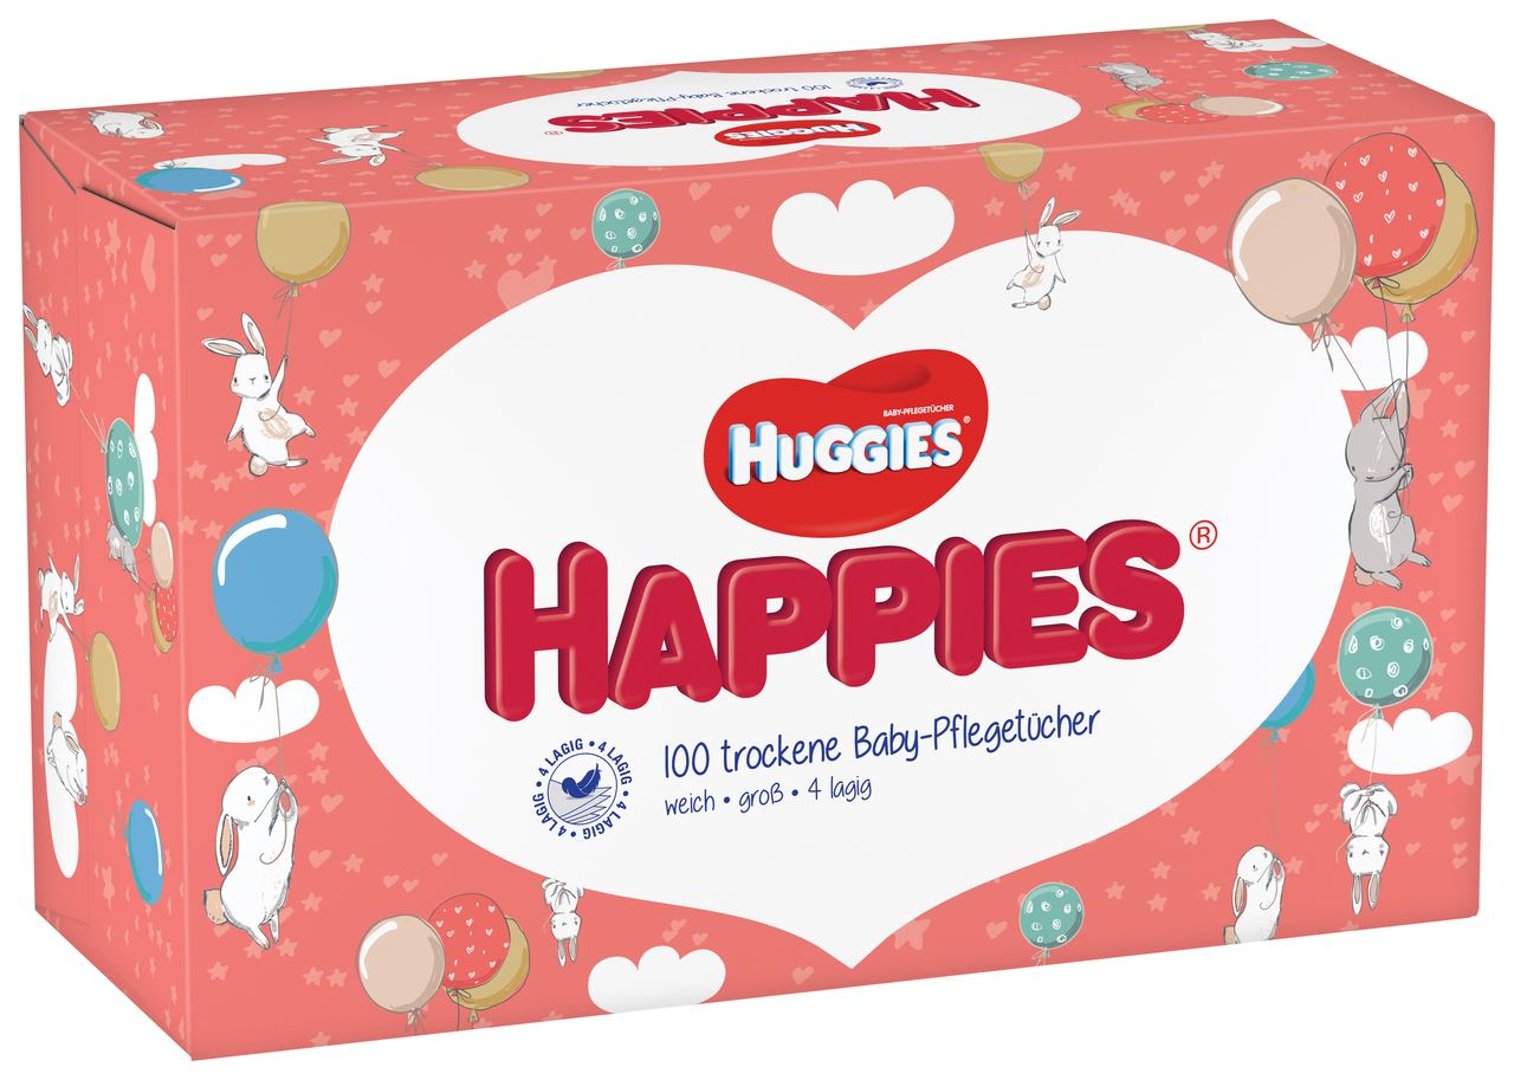 Huggies Happies trockene Baby-Pflegetücher - 400 g Schachtel